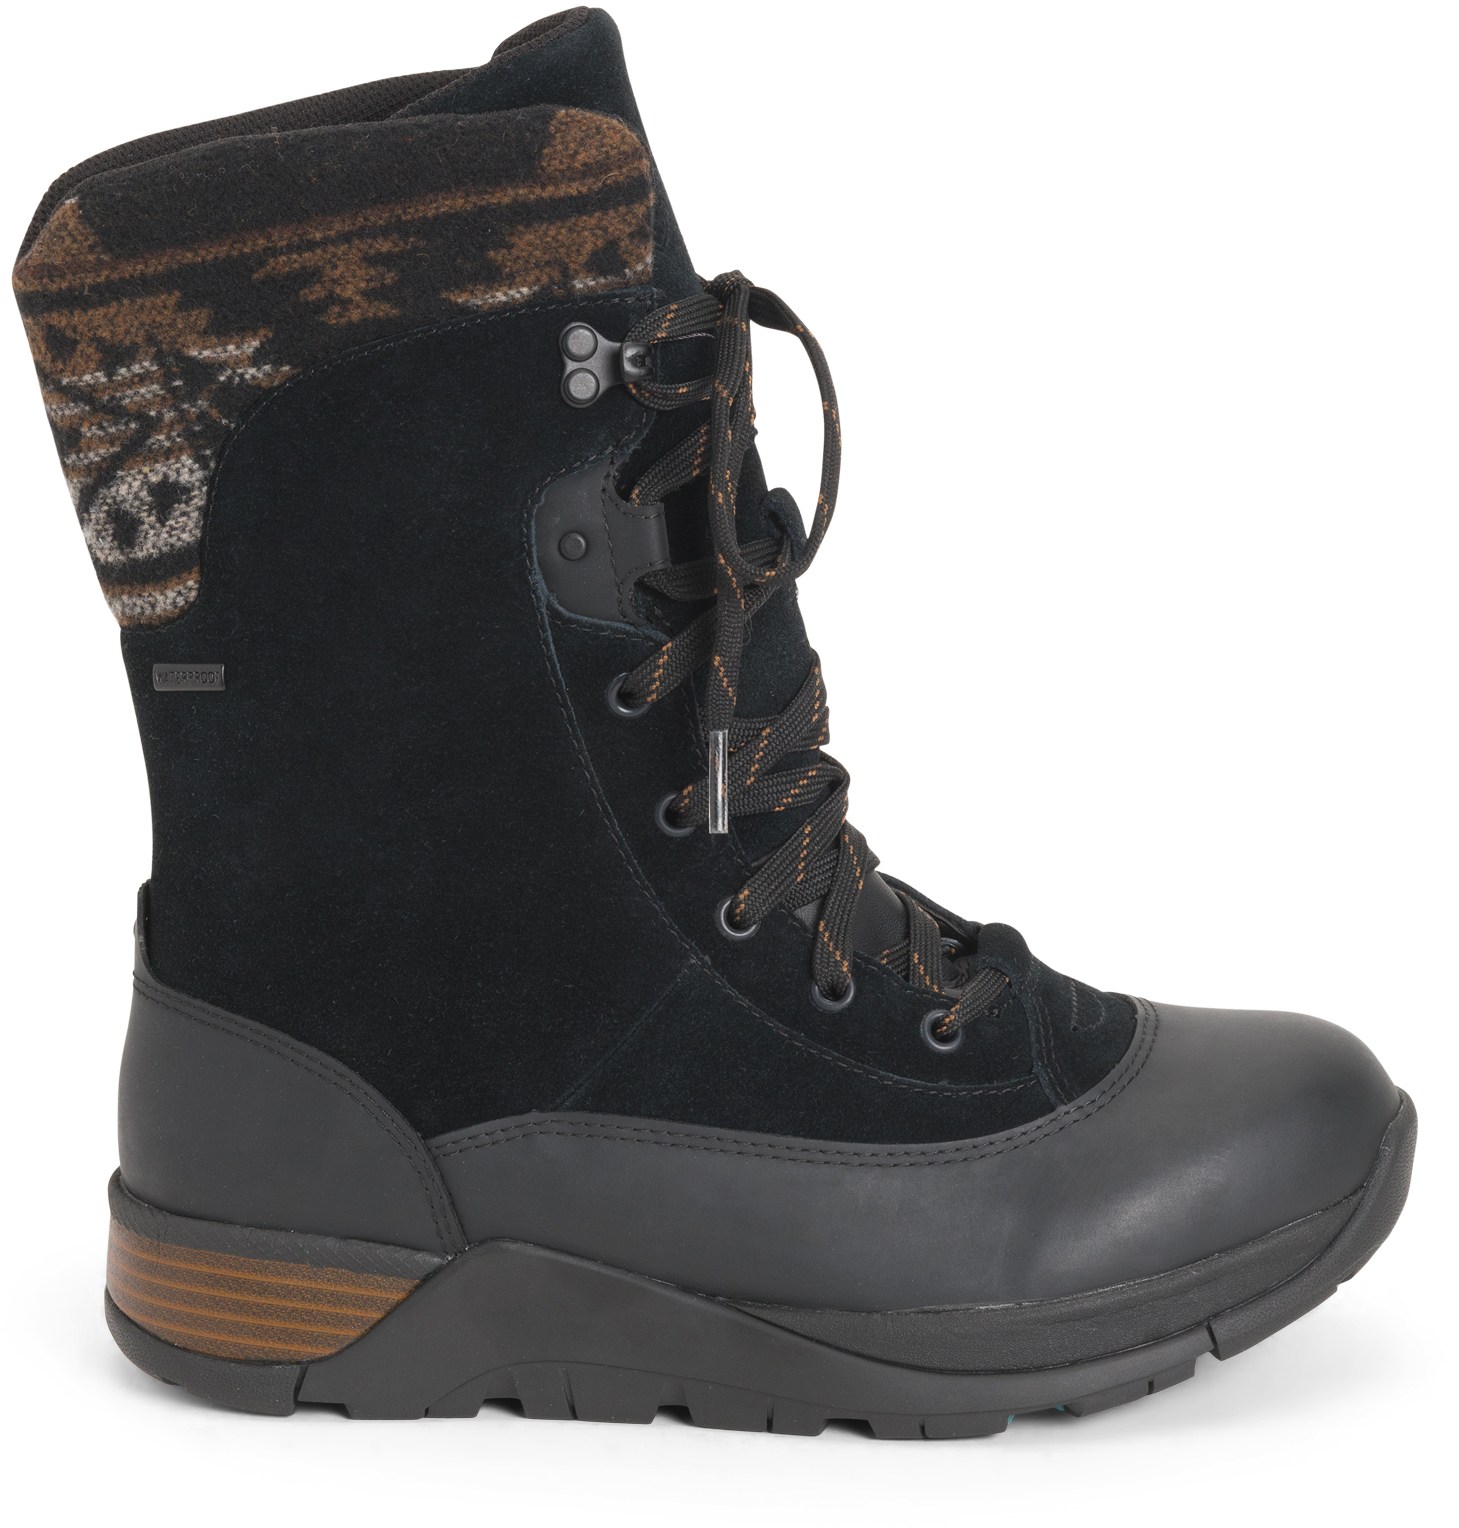 Зимние ботинки Apres II на шнуровке средней высоты — женские Muck Boot, черный цена и фото